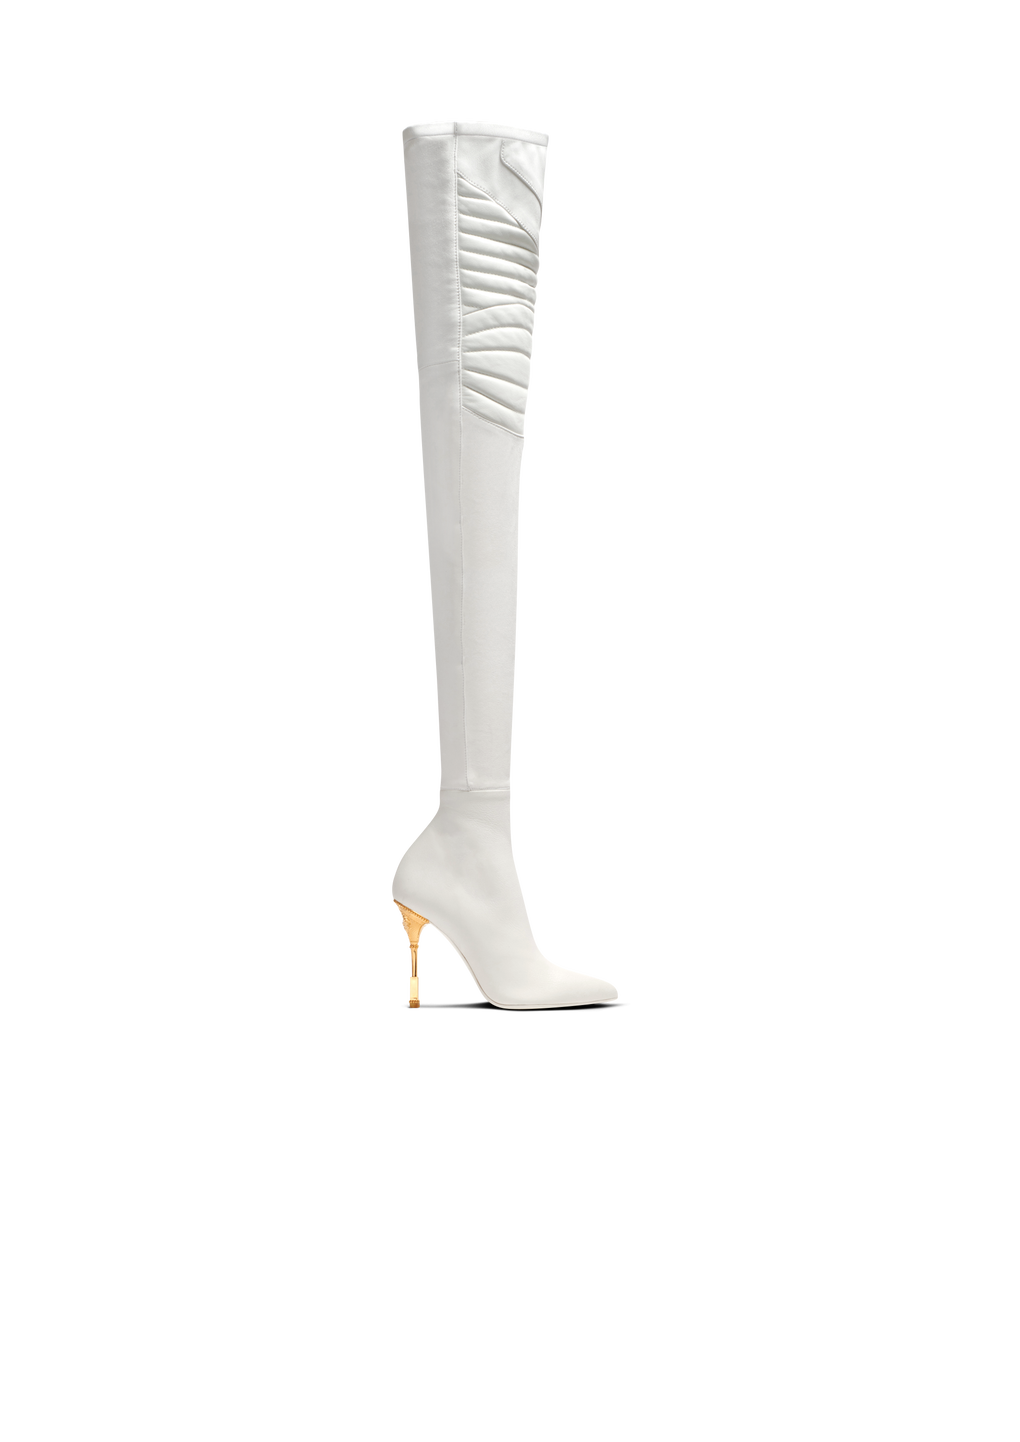 Moneta皮革高筒靴, white, hi-res